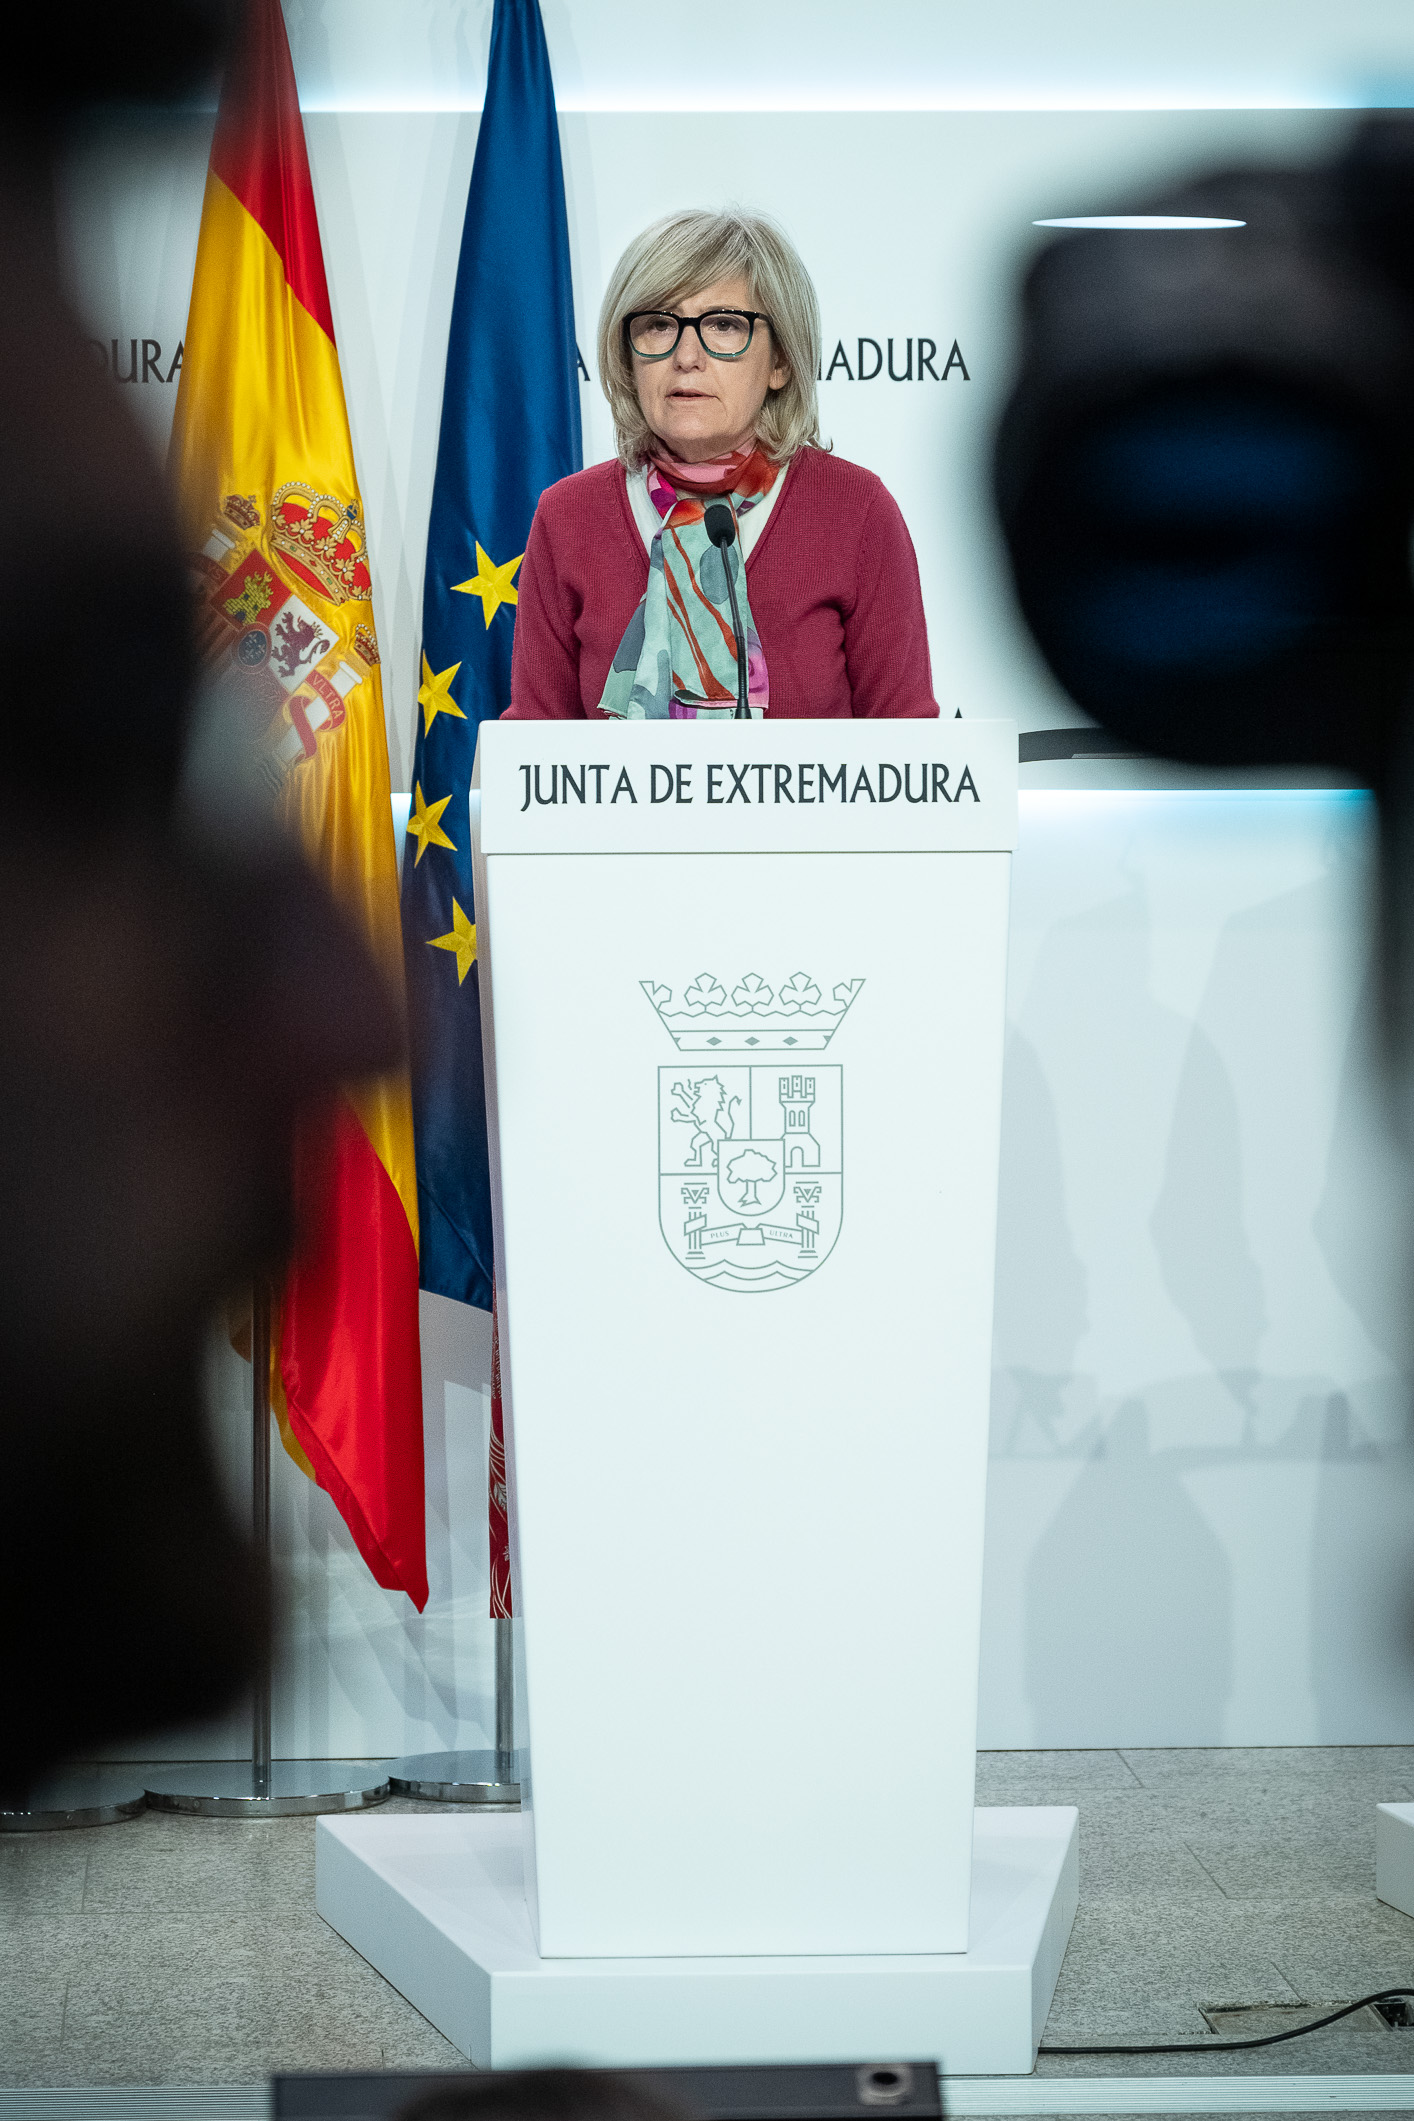 La portavoz de la Junta de Extremadura, Victoria Bazaga, durante la rueda de prensa.